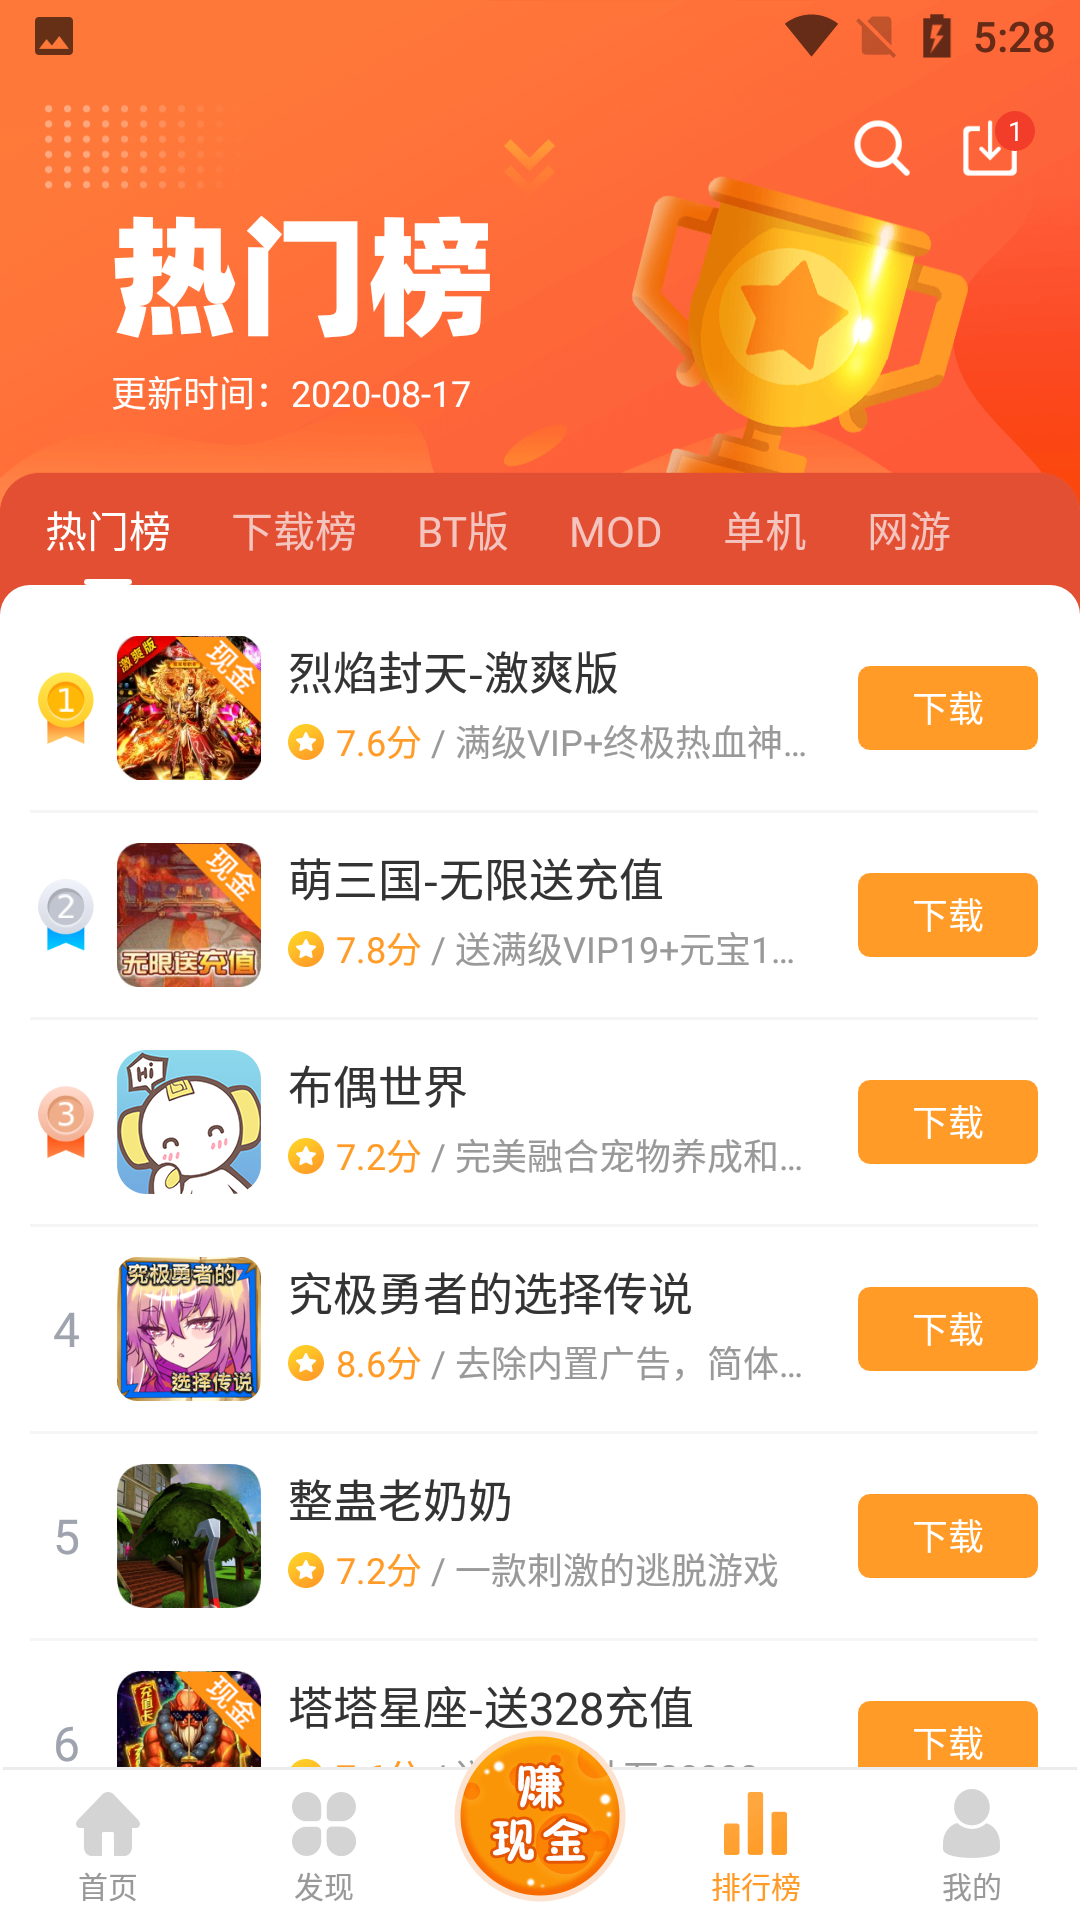 乐乐游戏盒安卓版app下载3.7.0.1